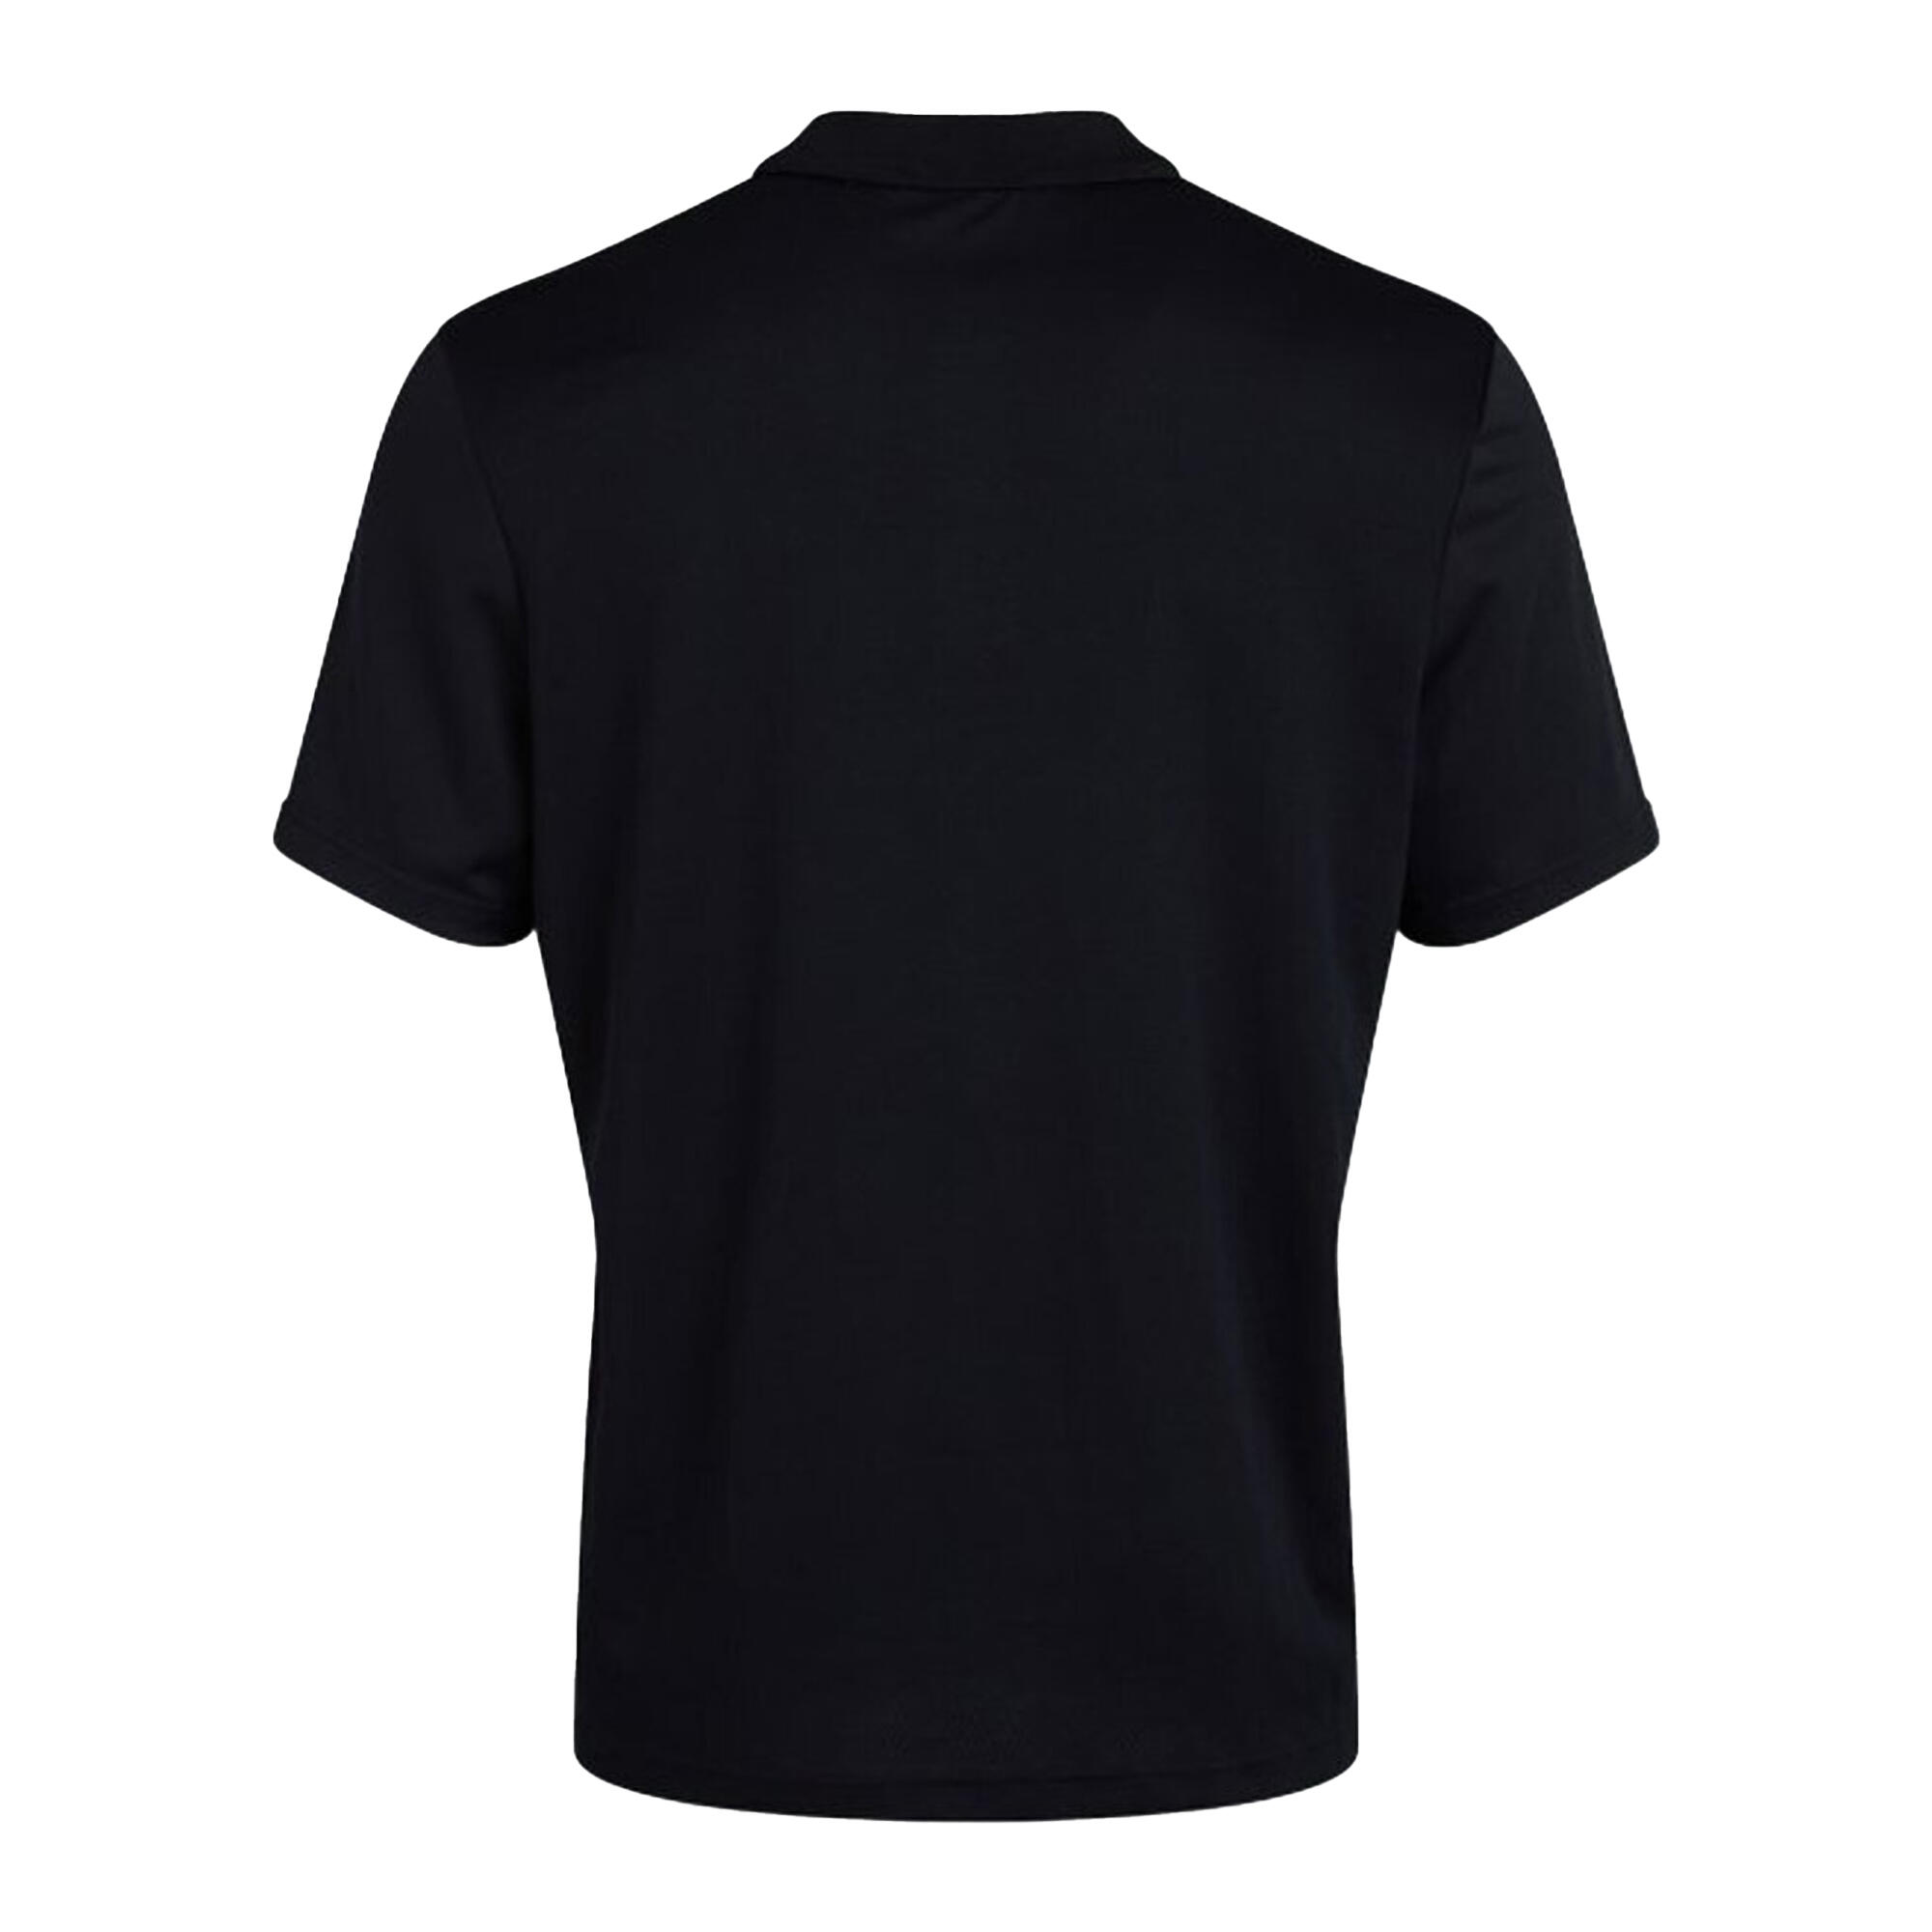 Womens/Ladies Club Dry Polo Shirt (Black) 2/3